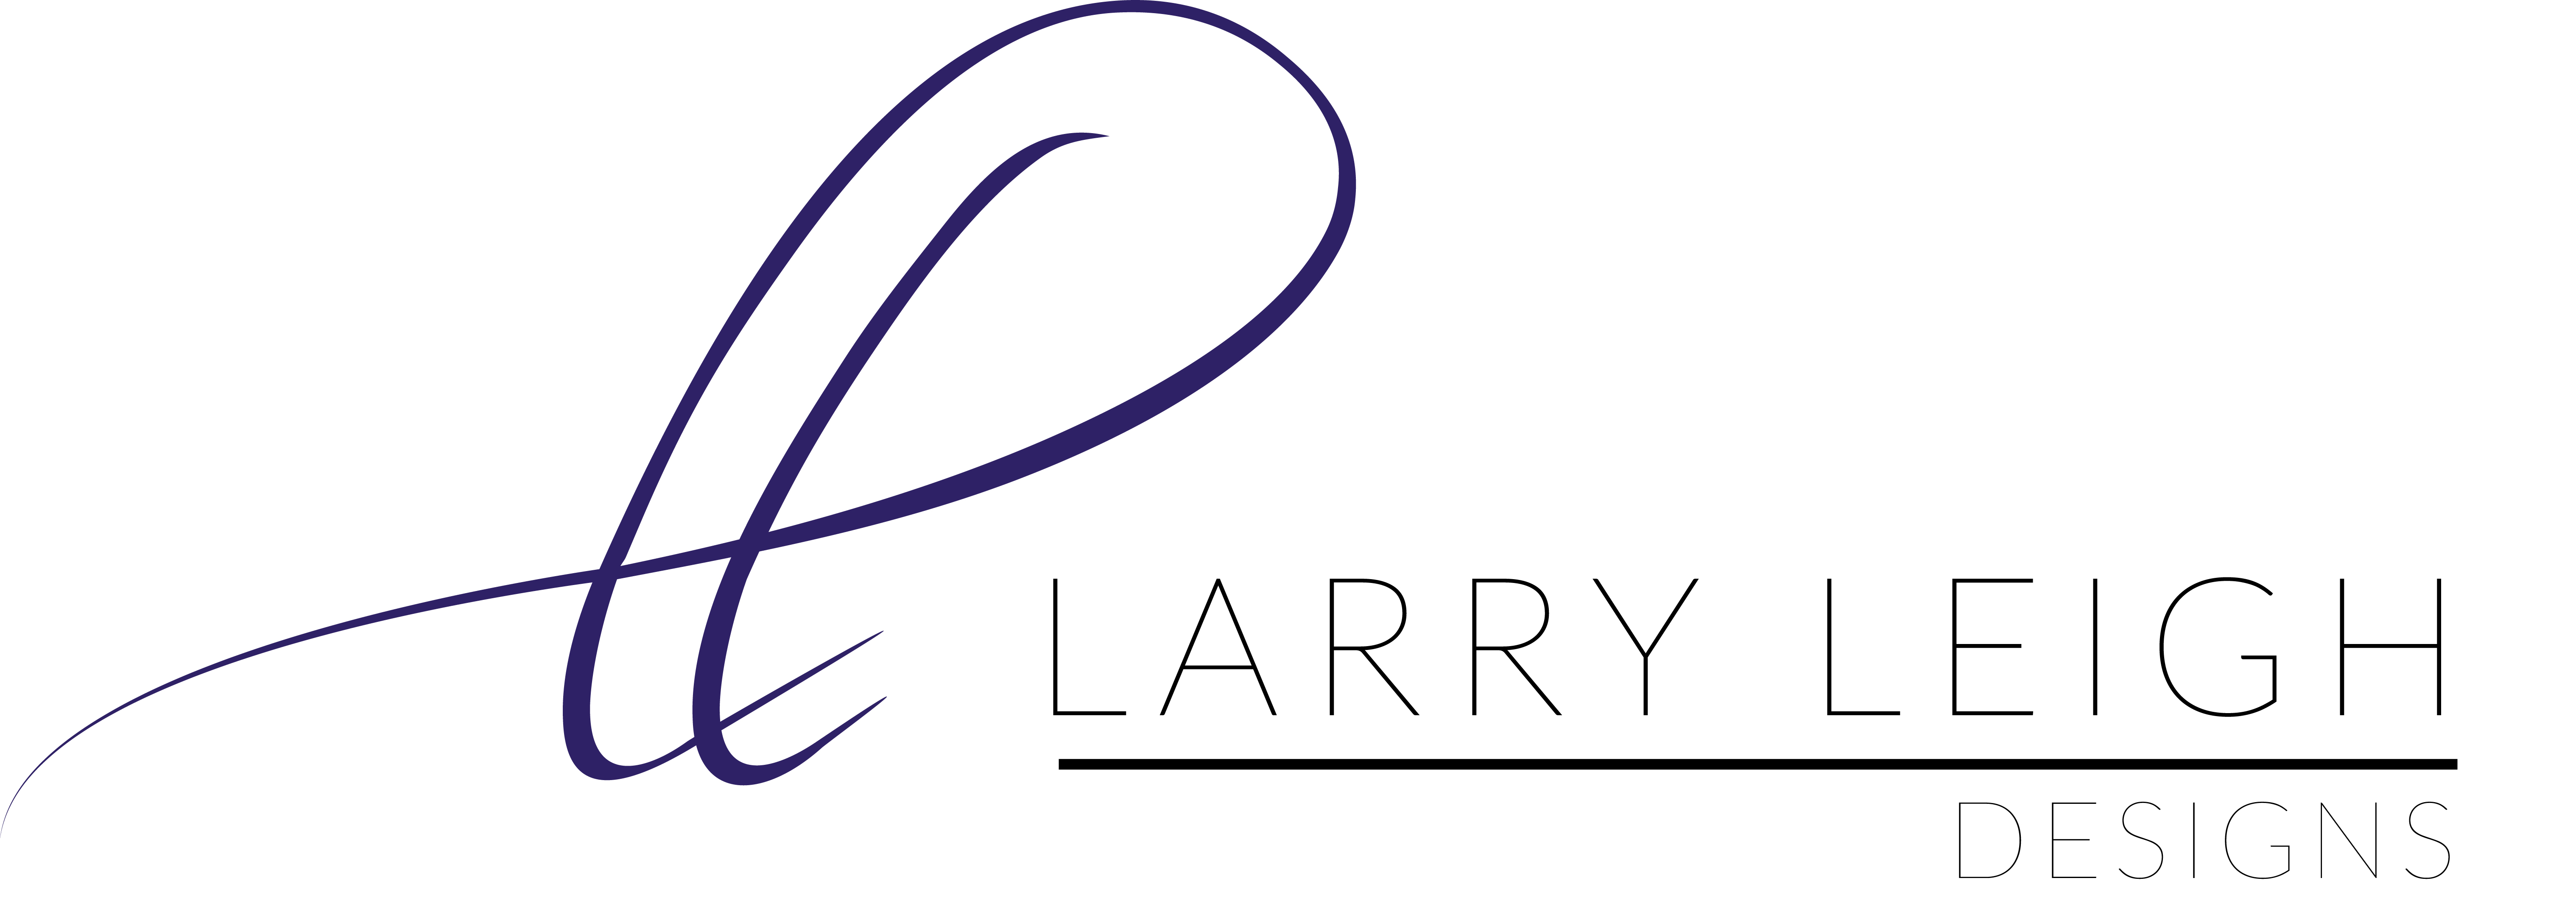 Classen Cuts LarryLeigh Designs